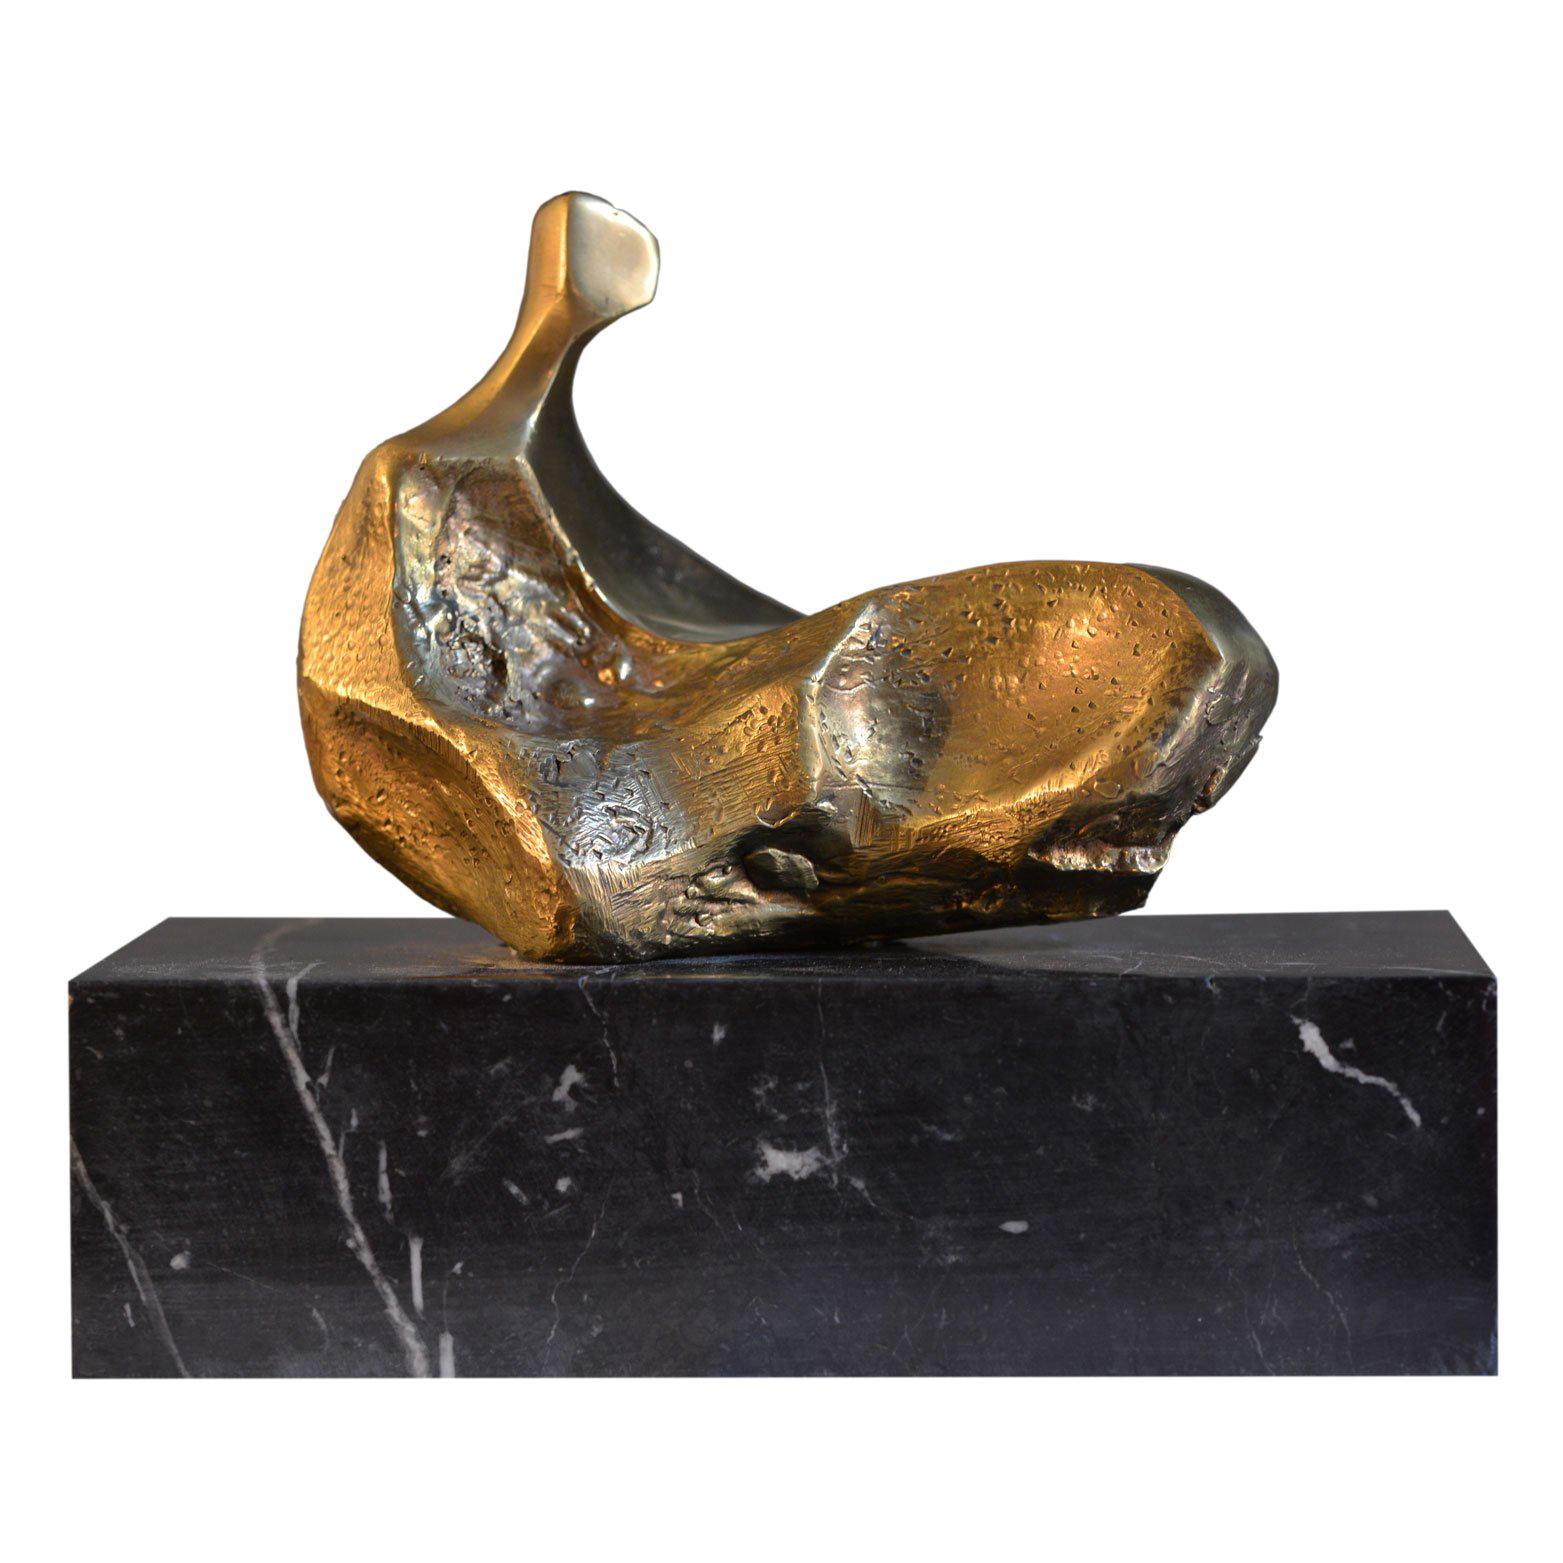 Domenico Calabrone, "Miniature" Sculpture in Bronze on Marble, Brazil, 1970s